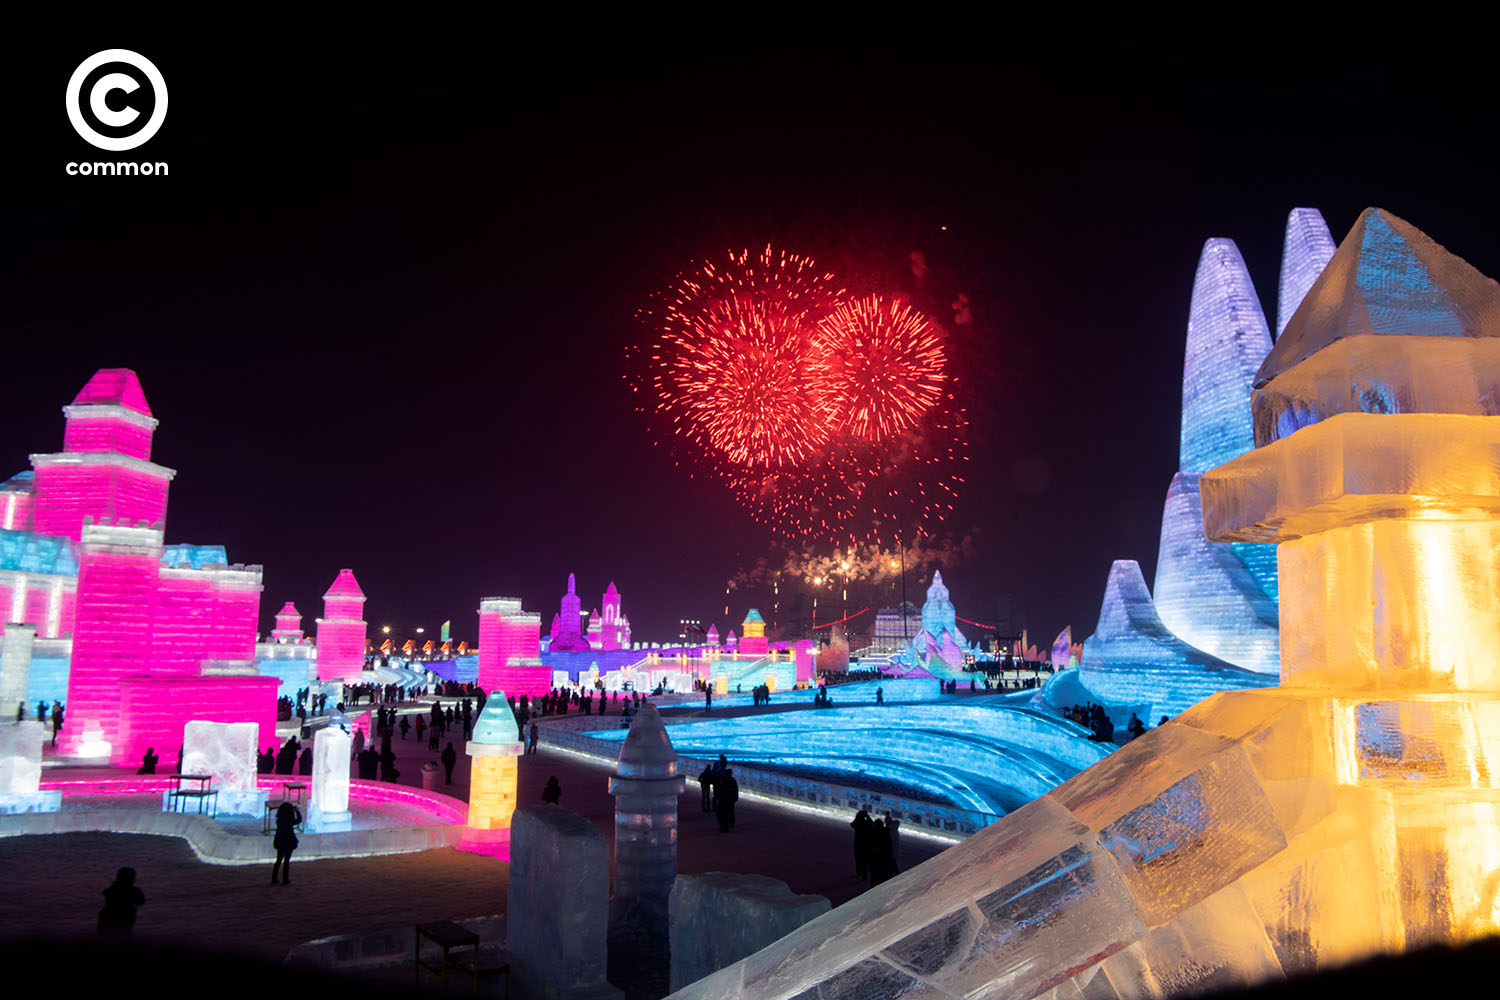 ฮาร์บิน เทศกาล น้ำแข็ง 2020 Harbin Festival